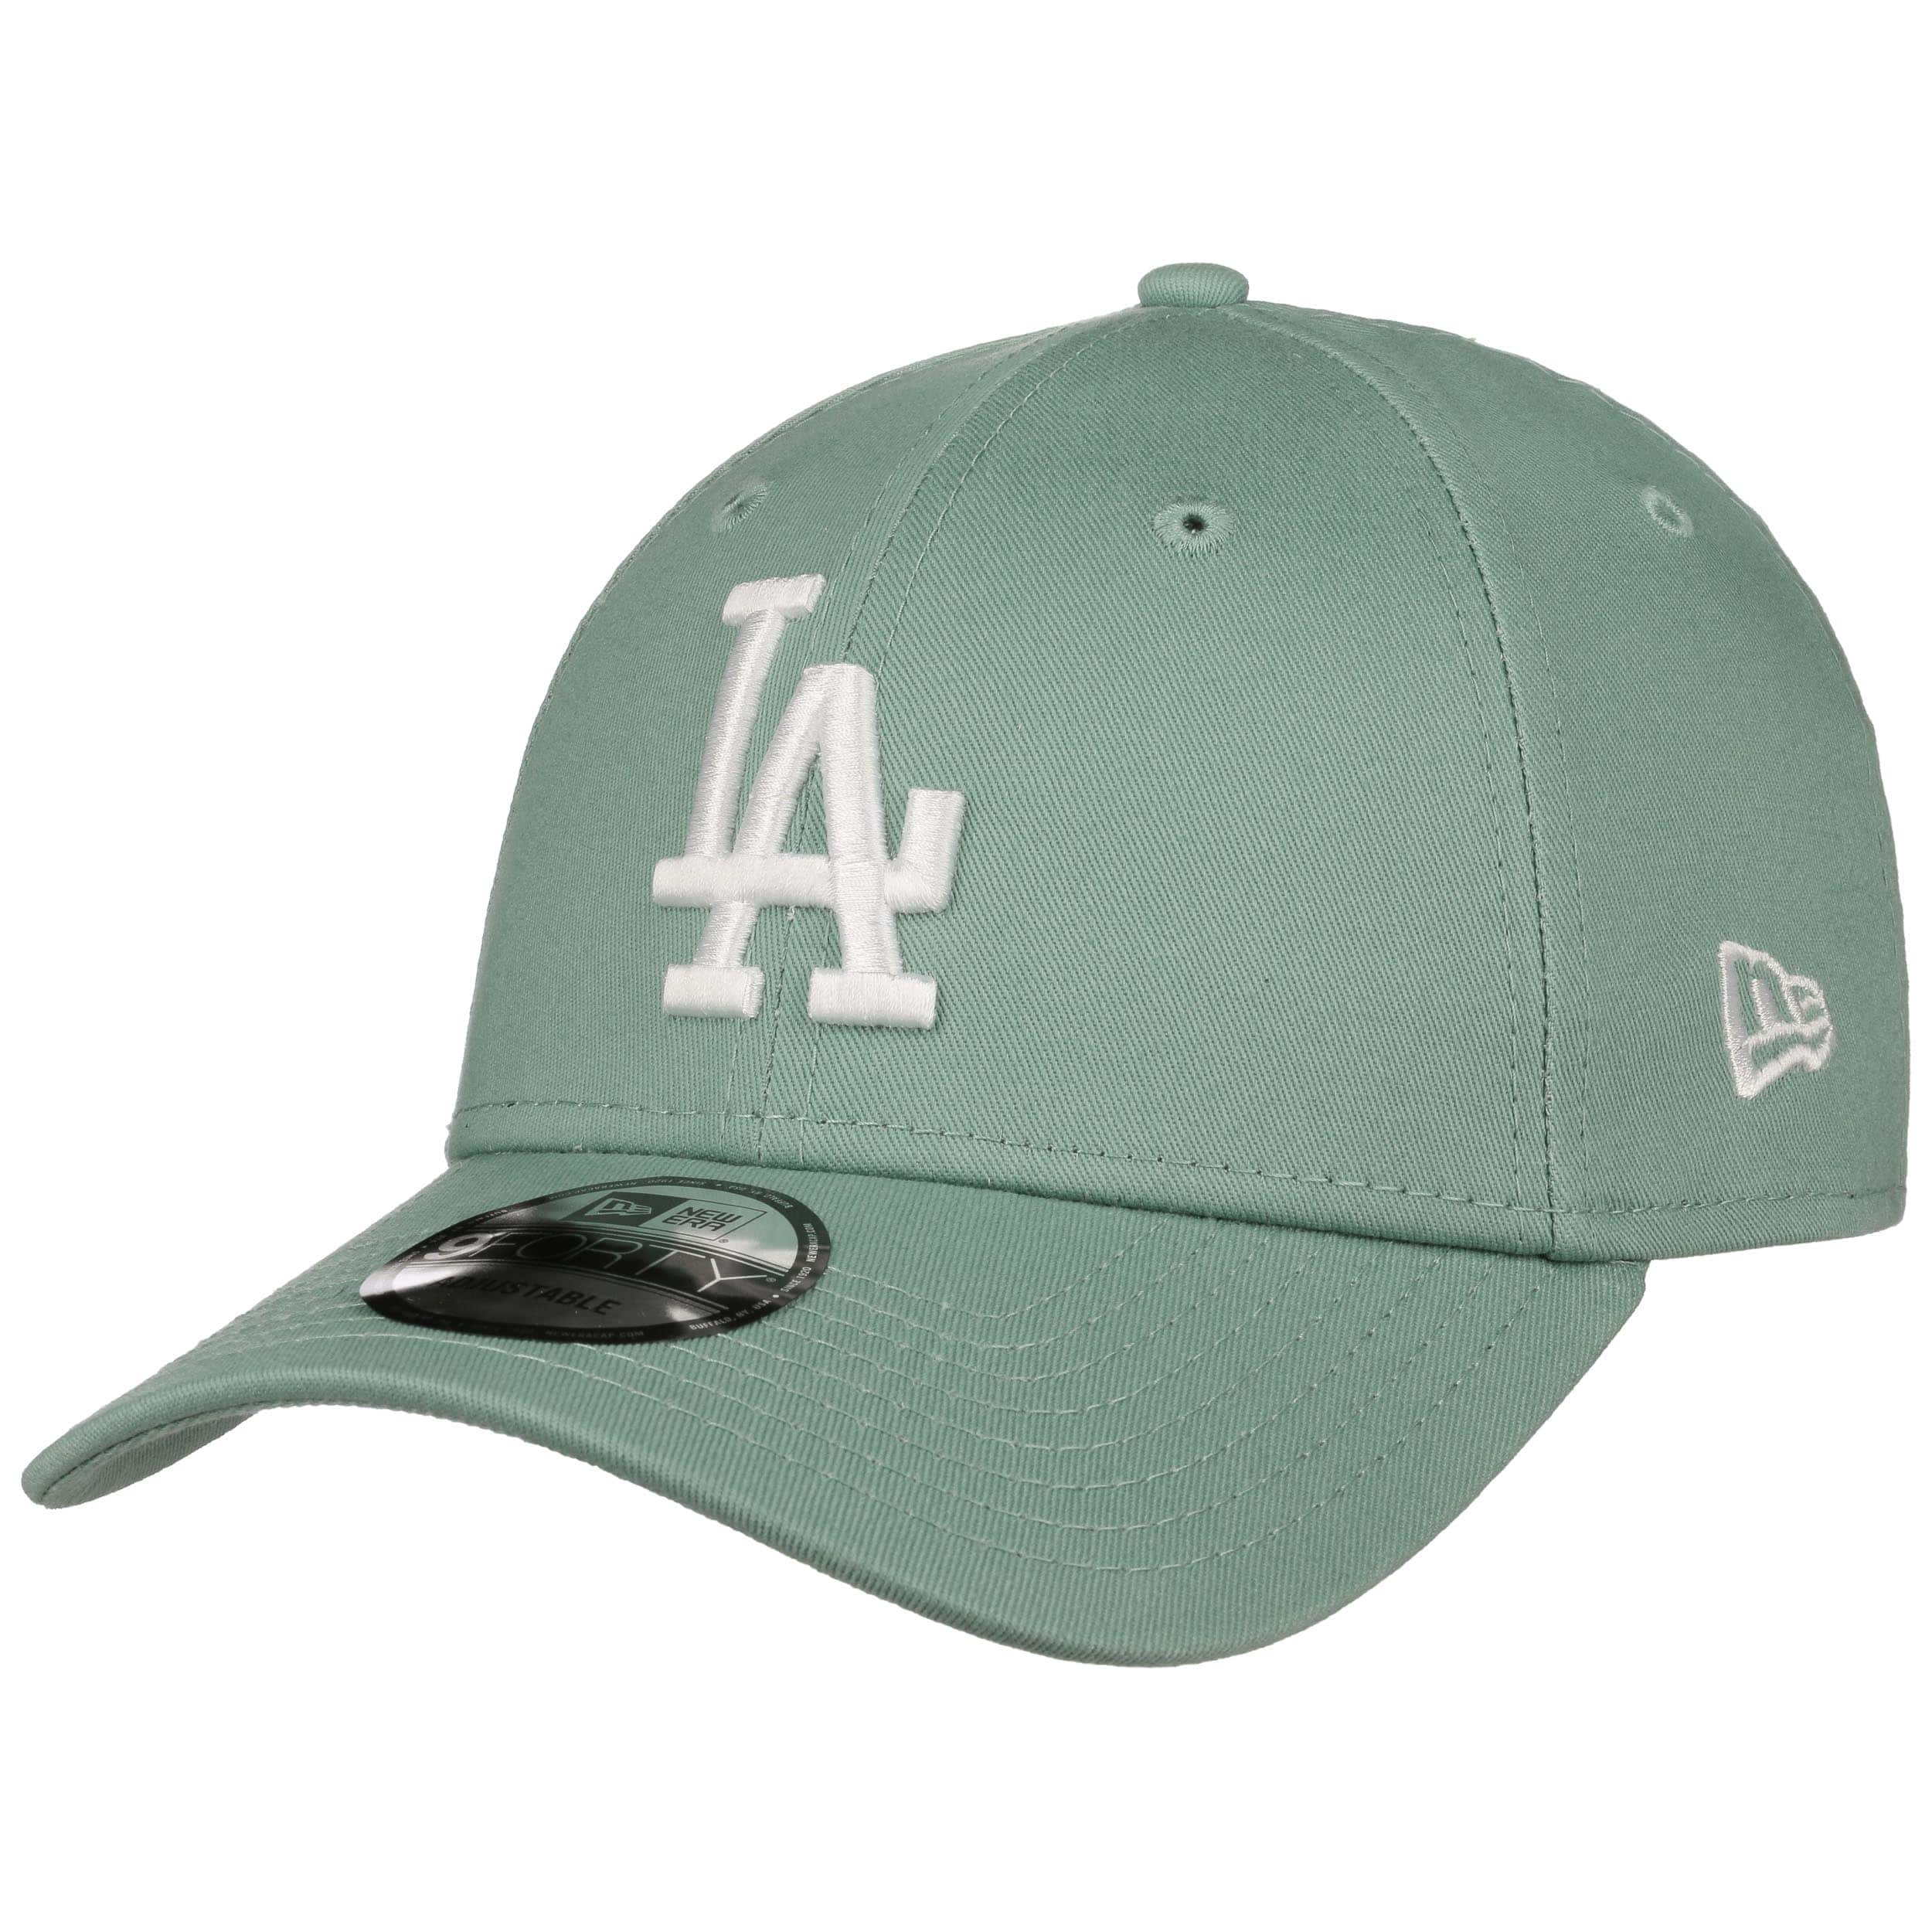 Details about   LA Dodgers New Era 940 Kids League Essential Brick Baseball Cap Age 4-10 